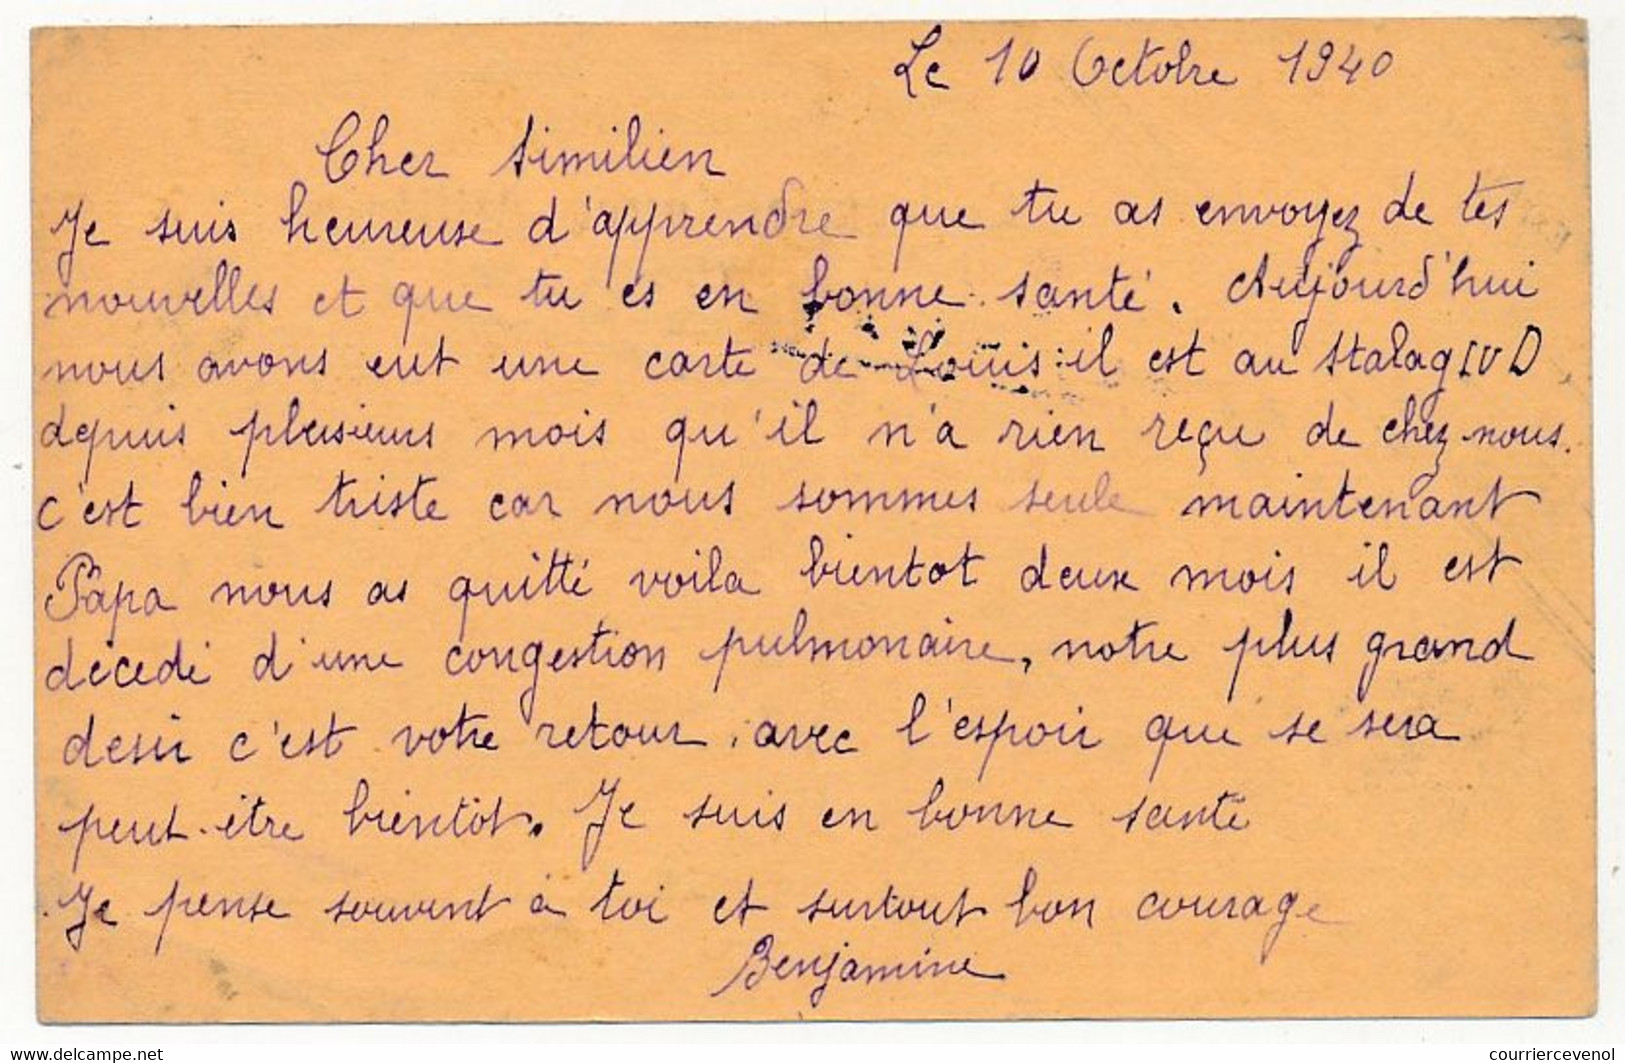 KRIEGSGEFANGENENPOST - Carte Postale D'édition Privée Pour Le Stalag II B - Censeur 17 - 1940 - Prisonnier Français - Guerre De 1939-45